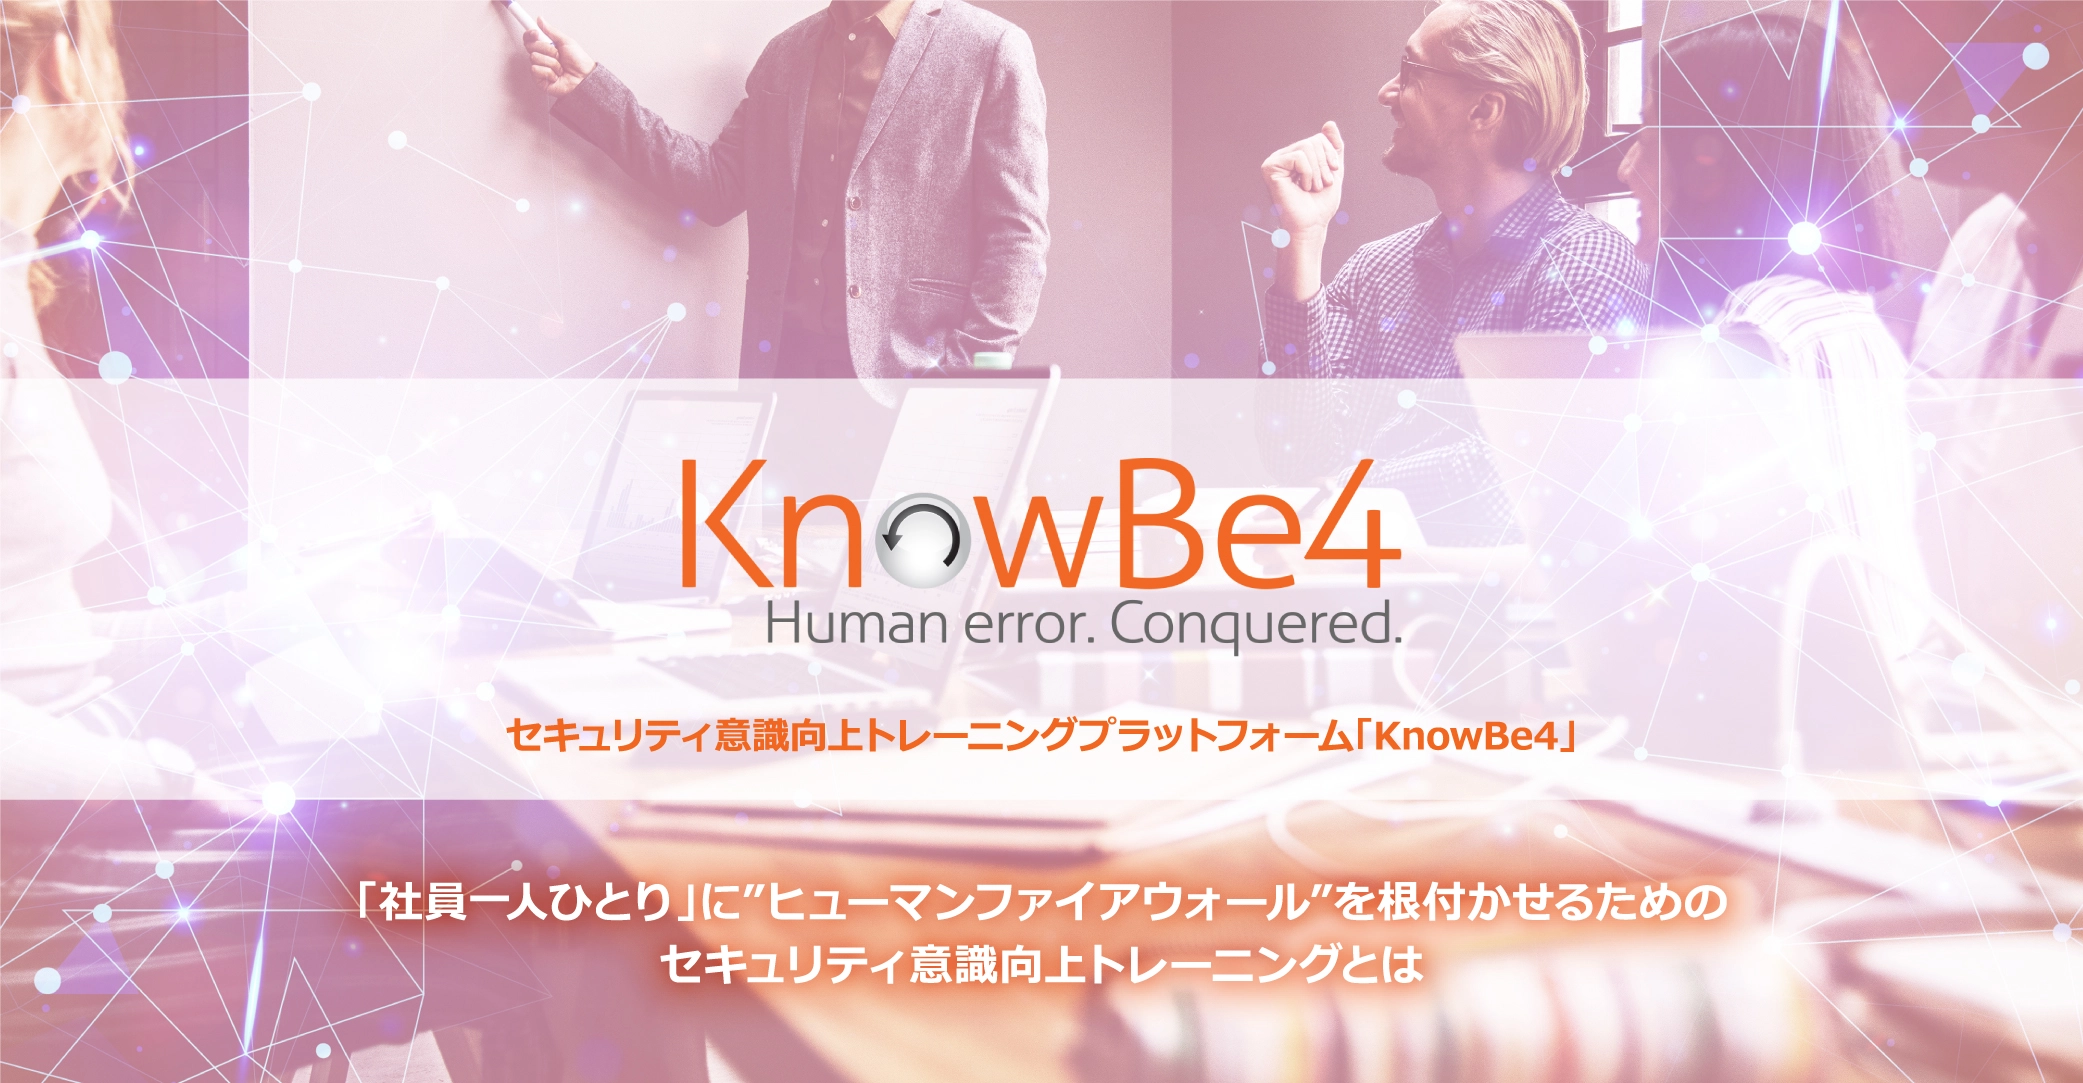 セキュリティ意識向上トレーニングプラットフォーム「KnowBe4」